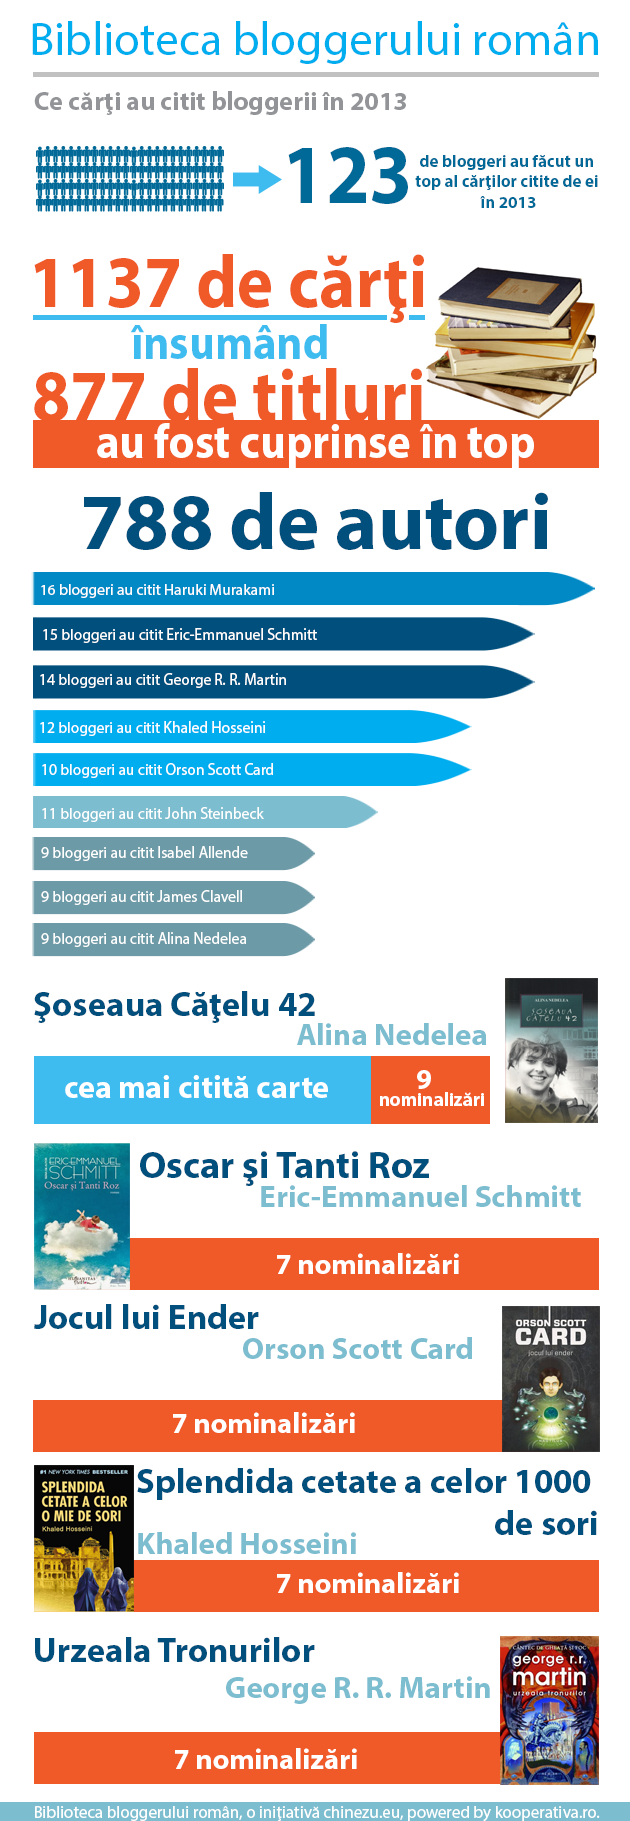 biblioteca bloggerului roman infografic